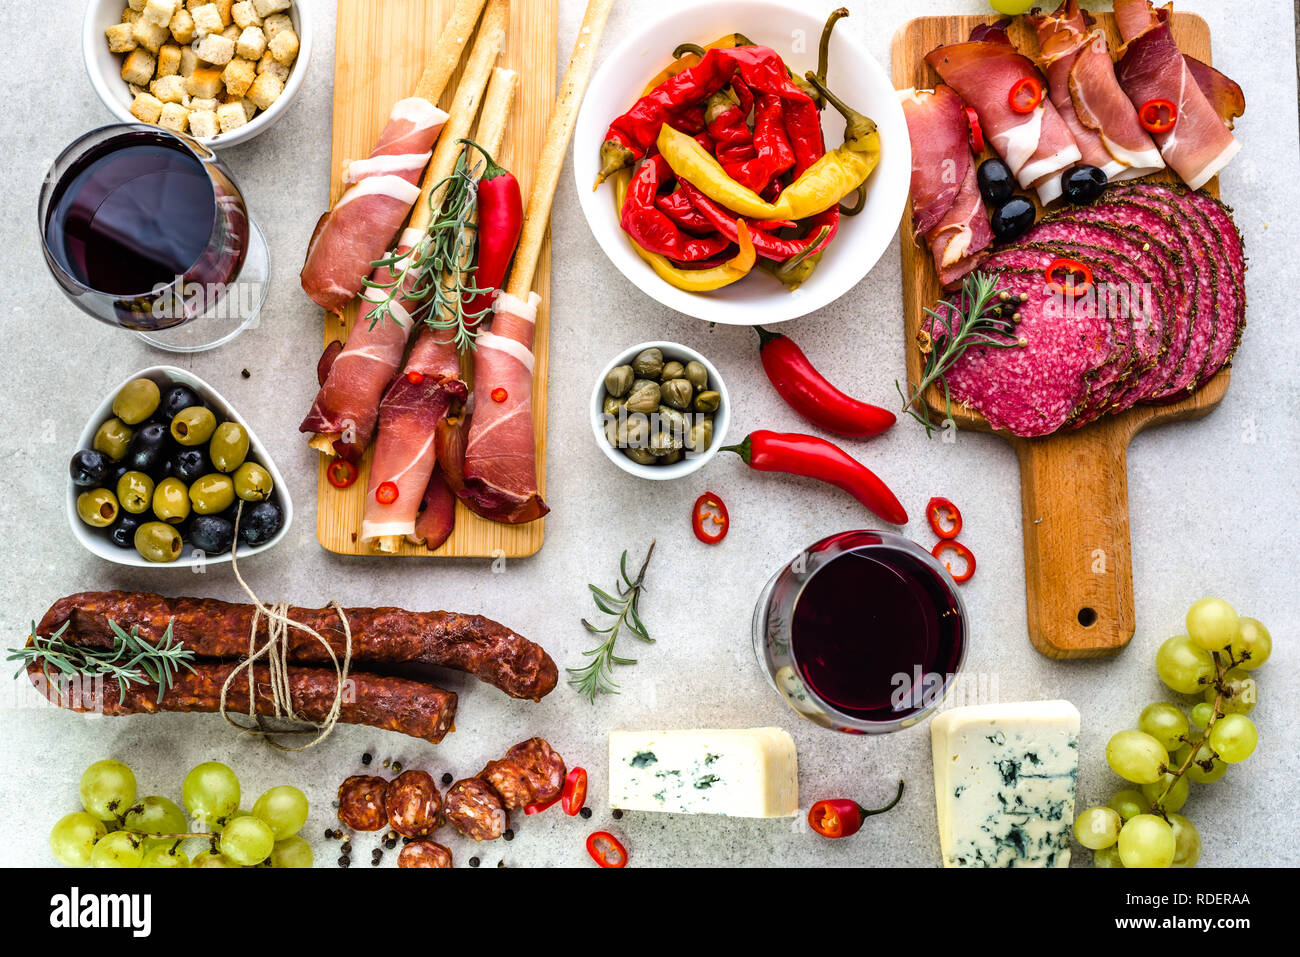 Tapas tradizionali spagnole, vino snack set, cibo dalla Spagna, formaggio, carne, verdure e altri stuzzichini sul tavolo, laici piana, overhead Foto Stock